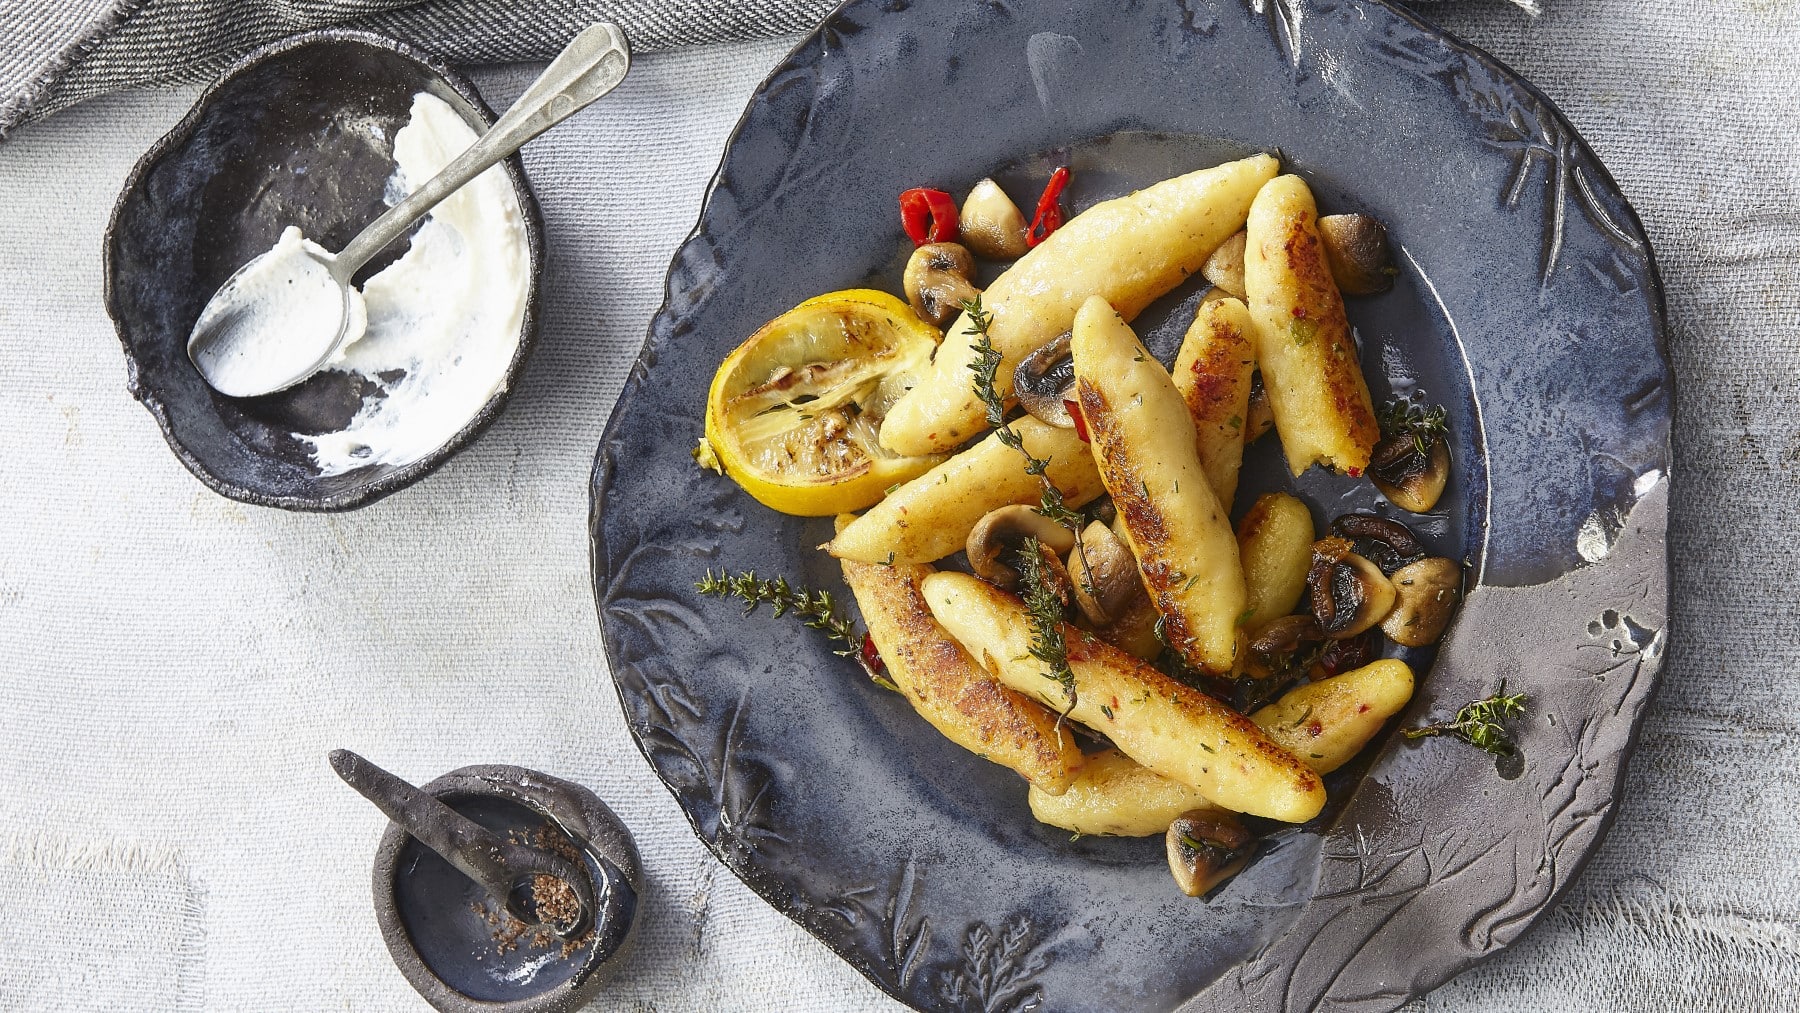 Kartoffelgnocchi mit Champignons und Sauerrahm garniert mit Zitrone, Thymian und Chili auf einem dunklen Teller neben einer Schale mit Sauerrahm vor grauem Hintergrund.